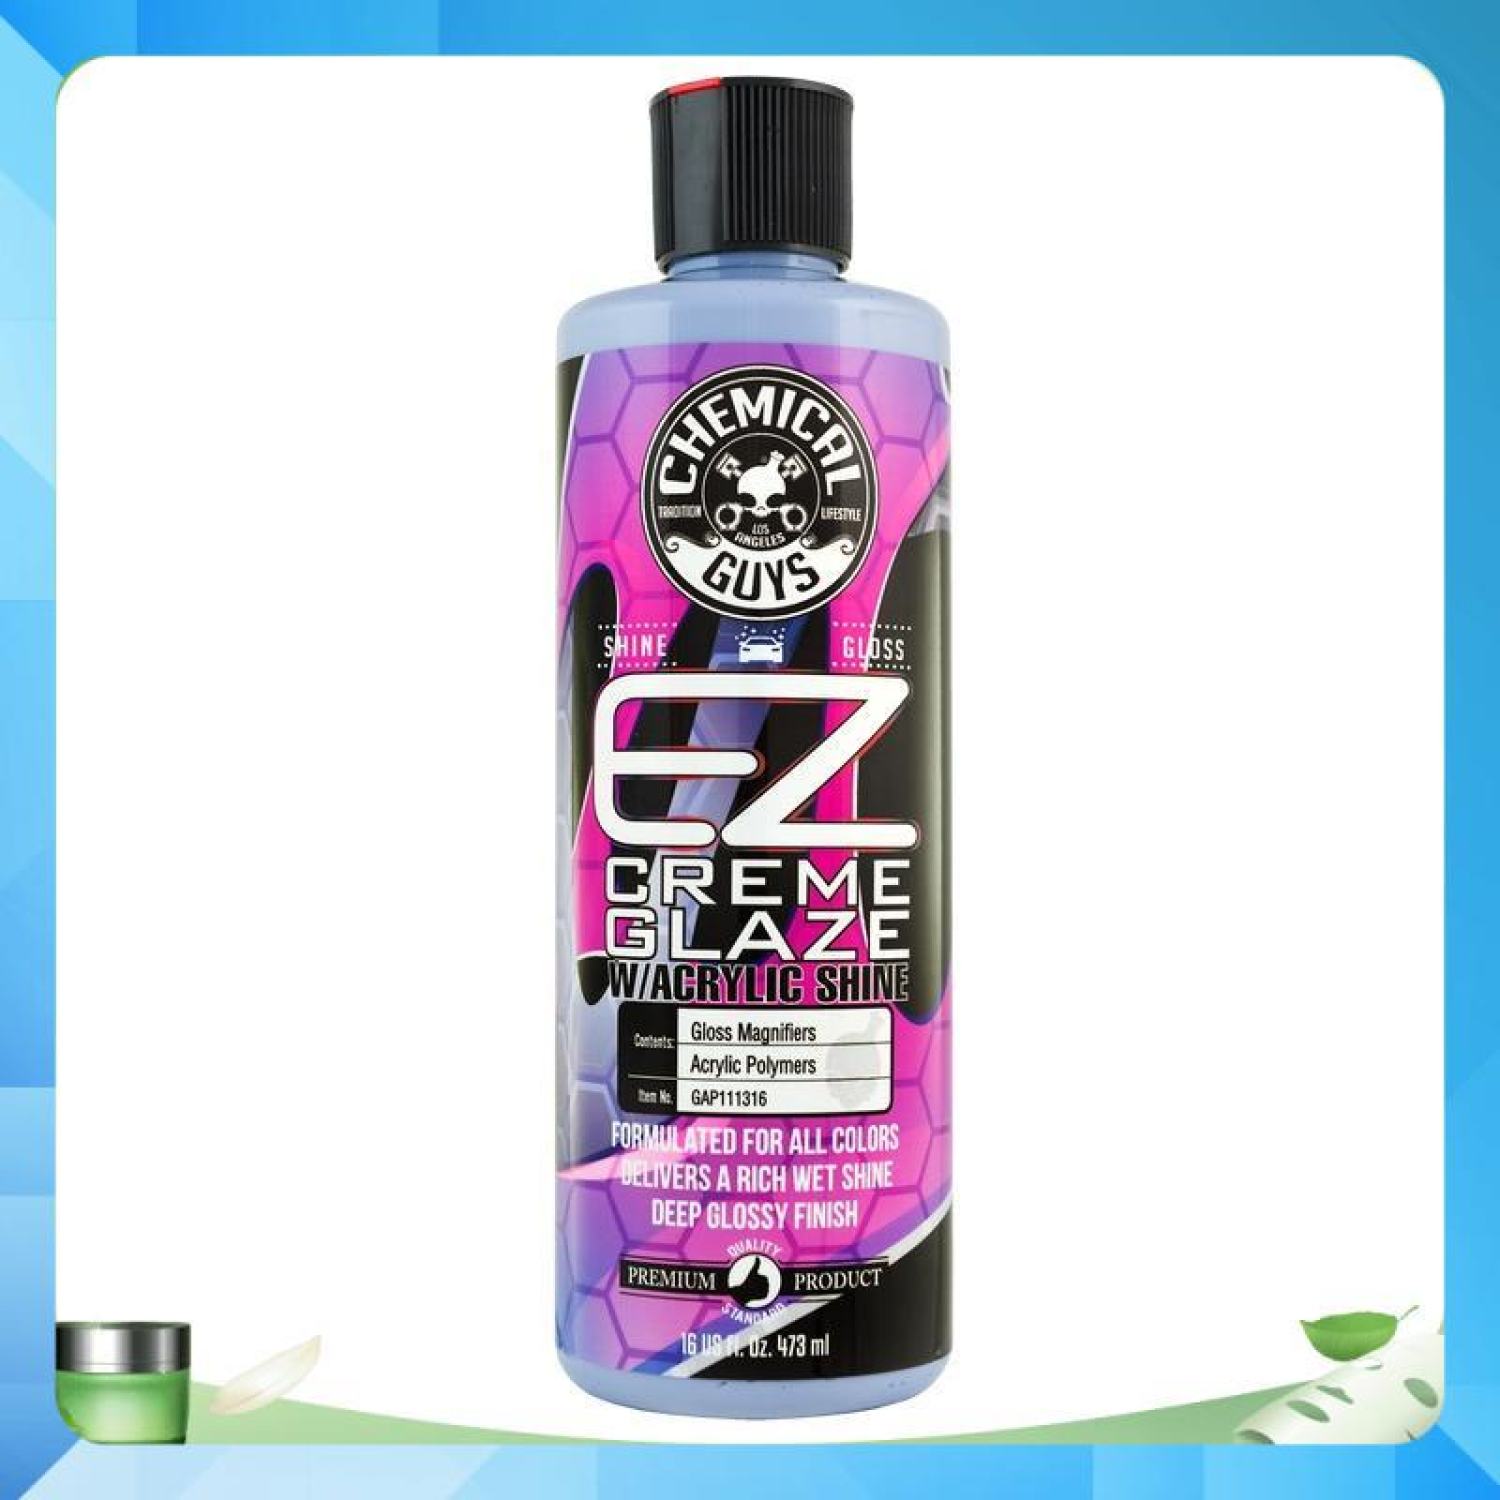 Kem CHE XƯỚC DĂM thương hiệu Chemical Guys EZ Cream Glaze - 473ml